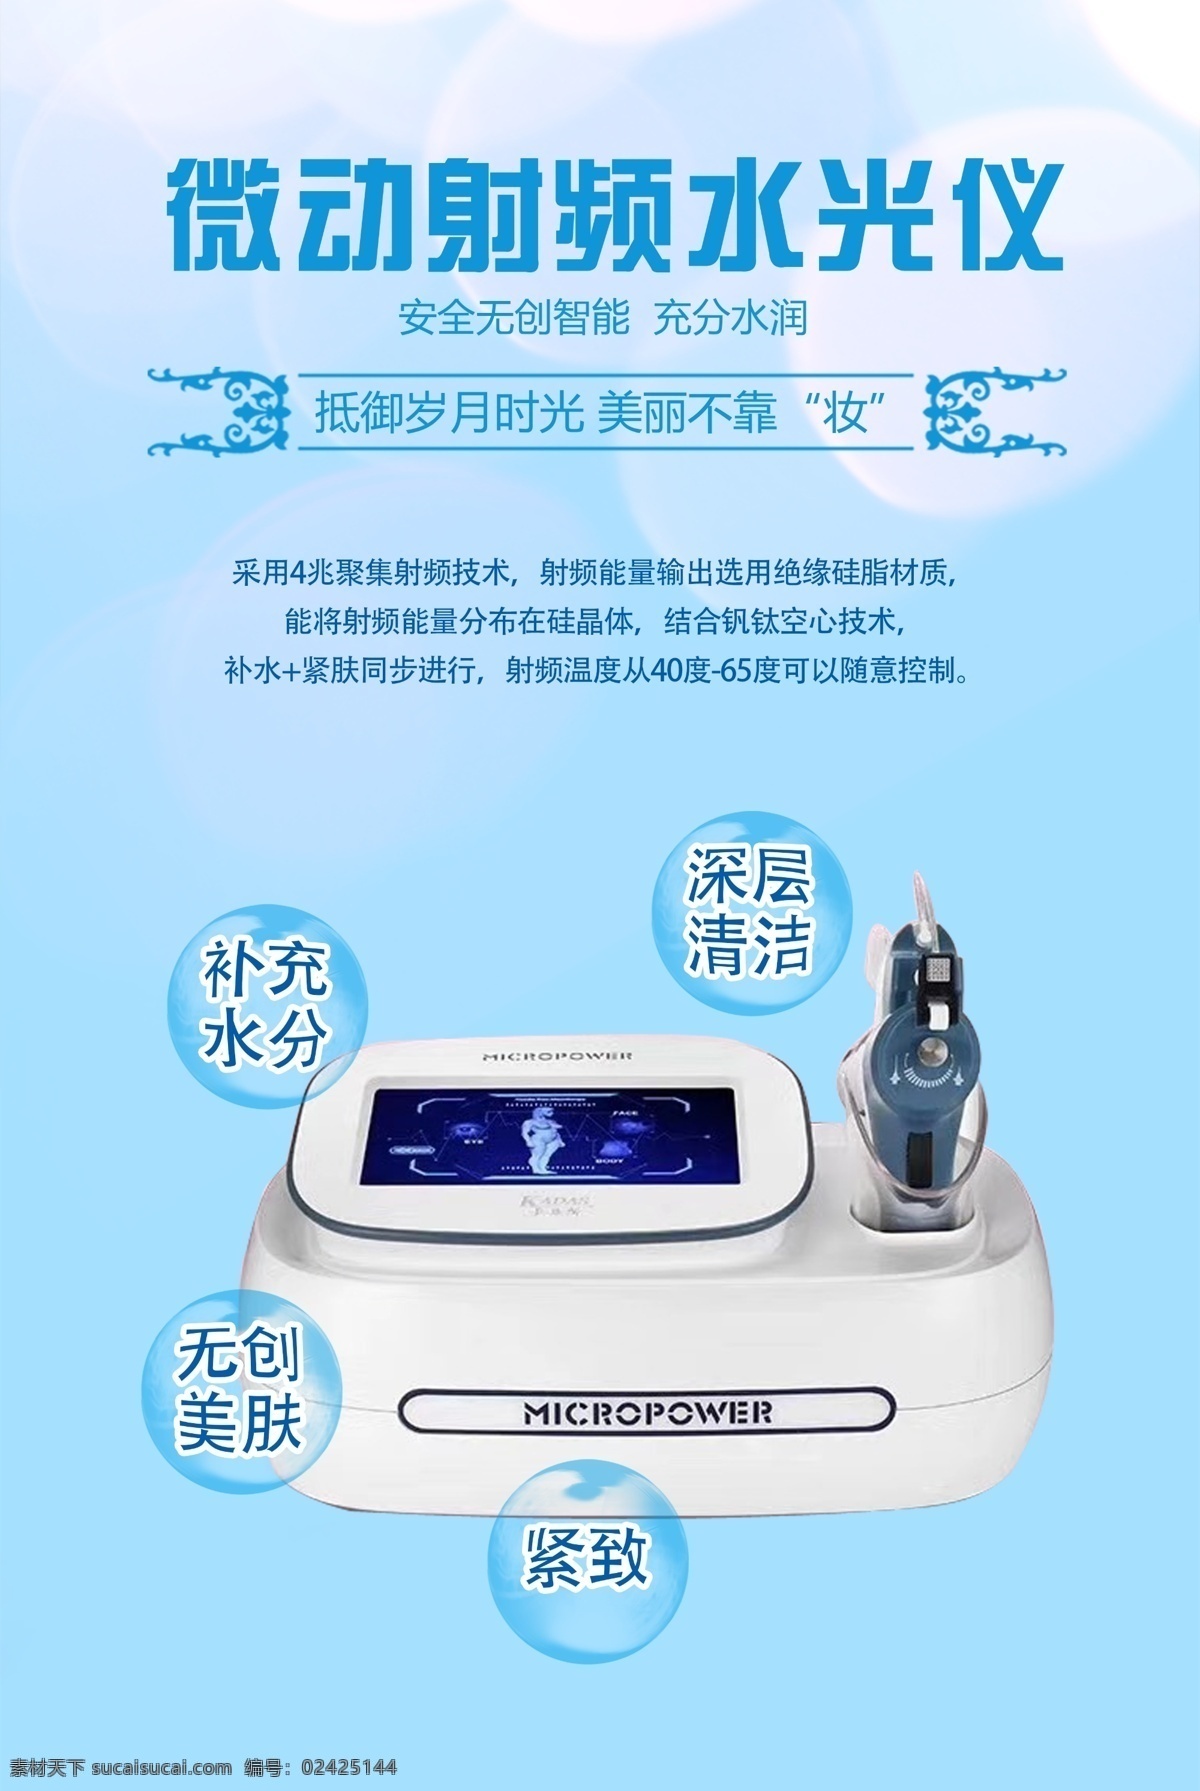 微动 射频 水 光仪 美容院 水光仪 仪器 海报 蓝色 清爽 分层